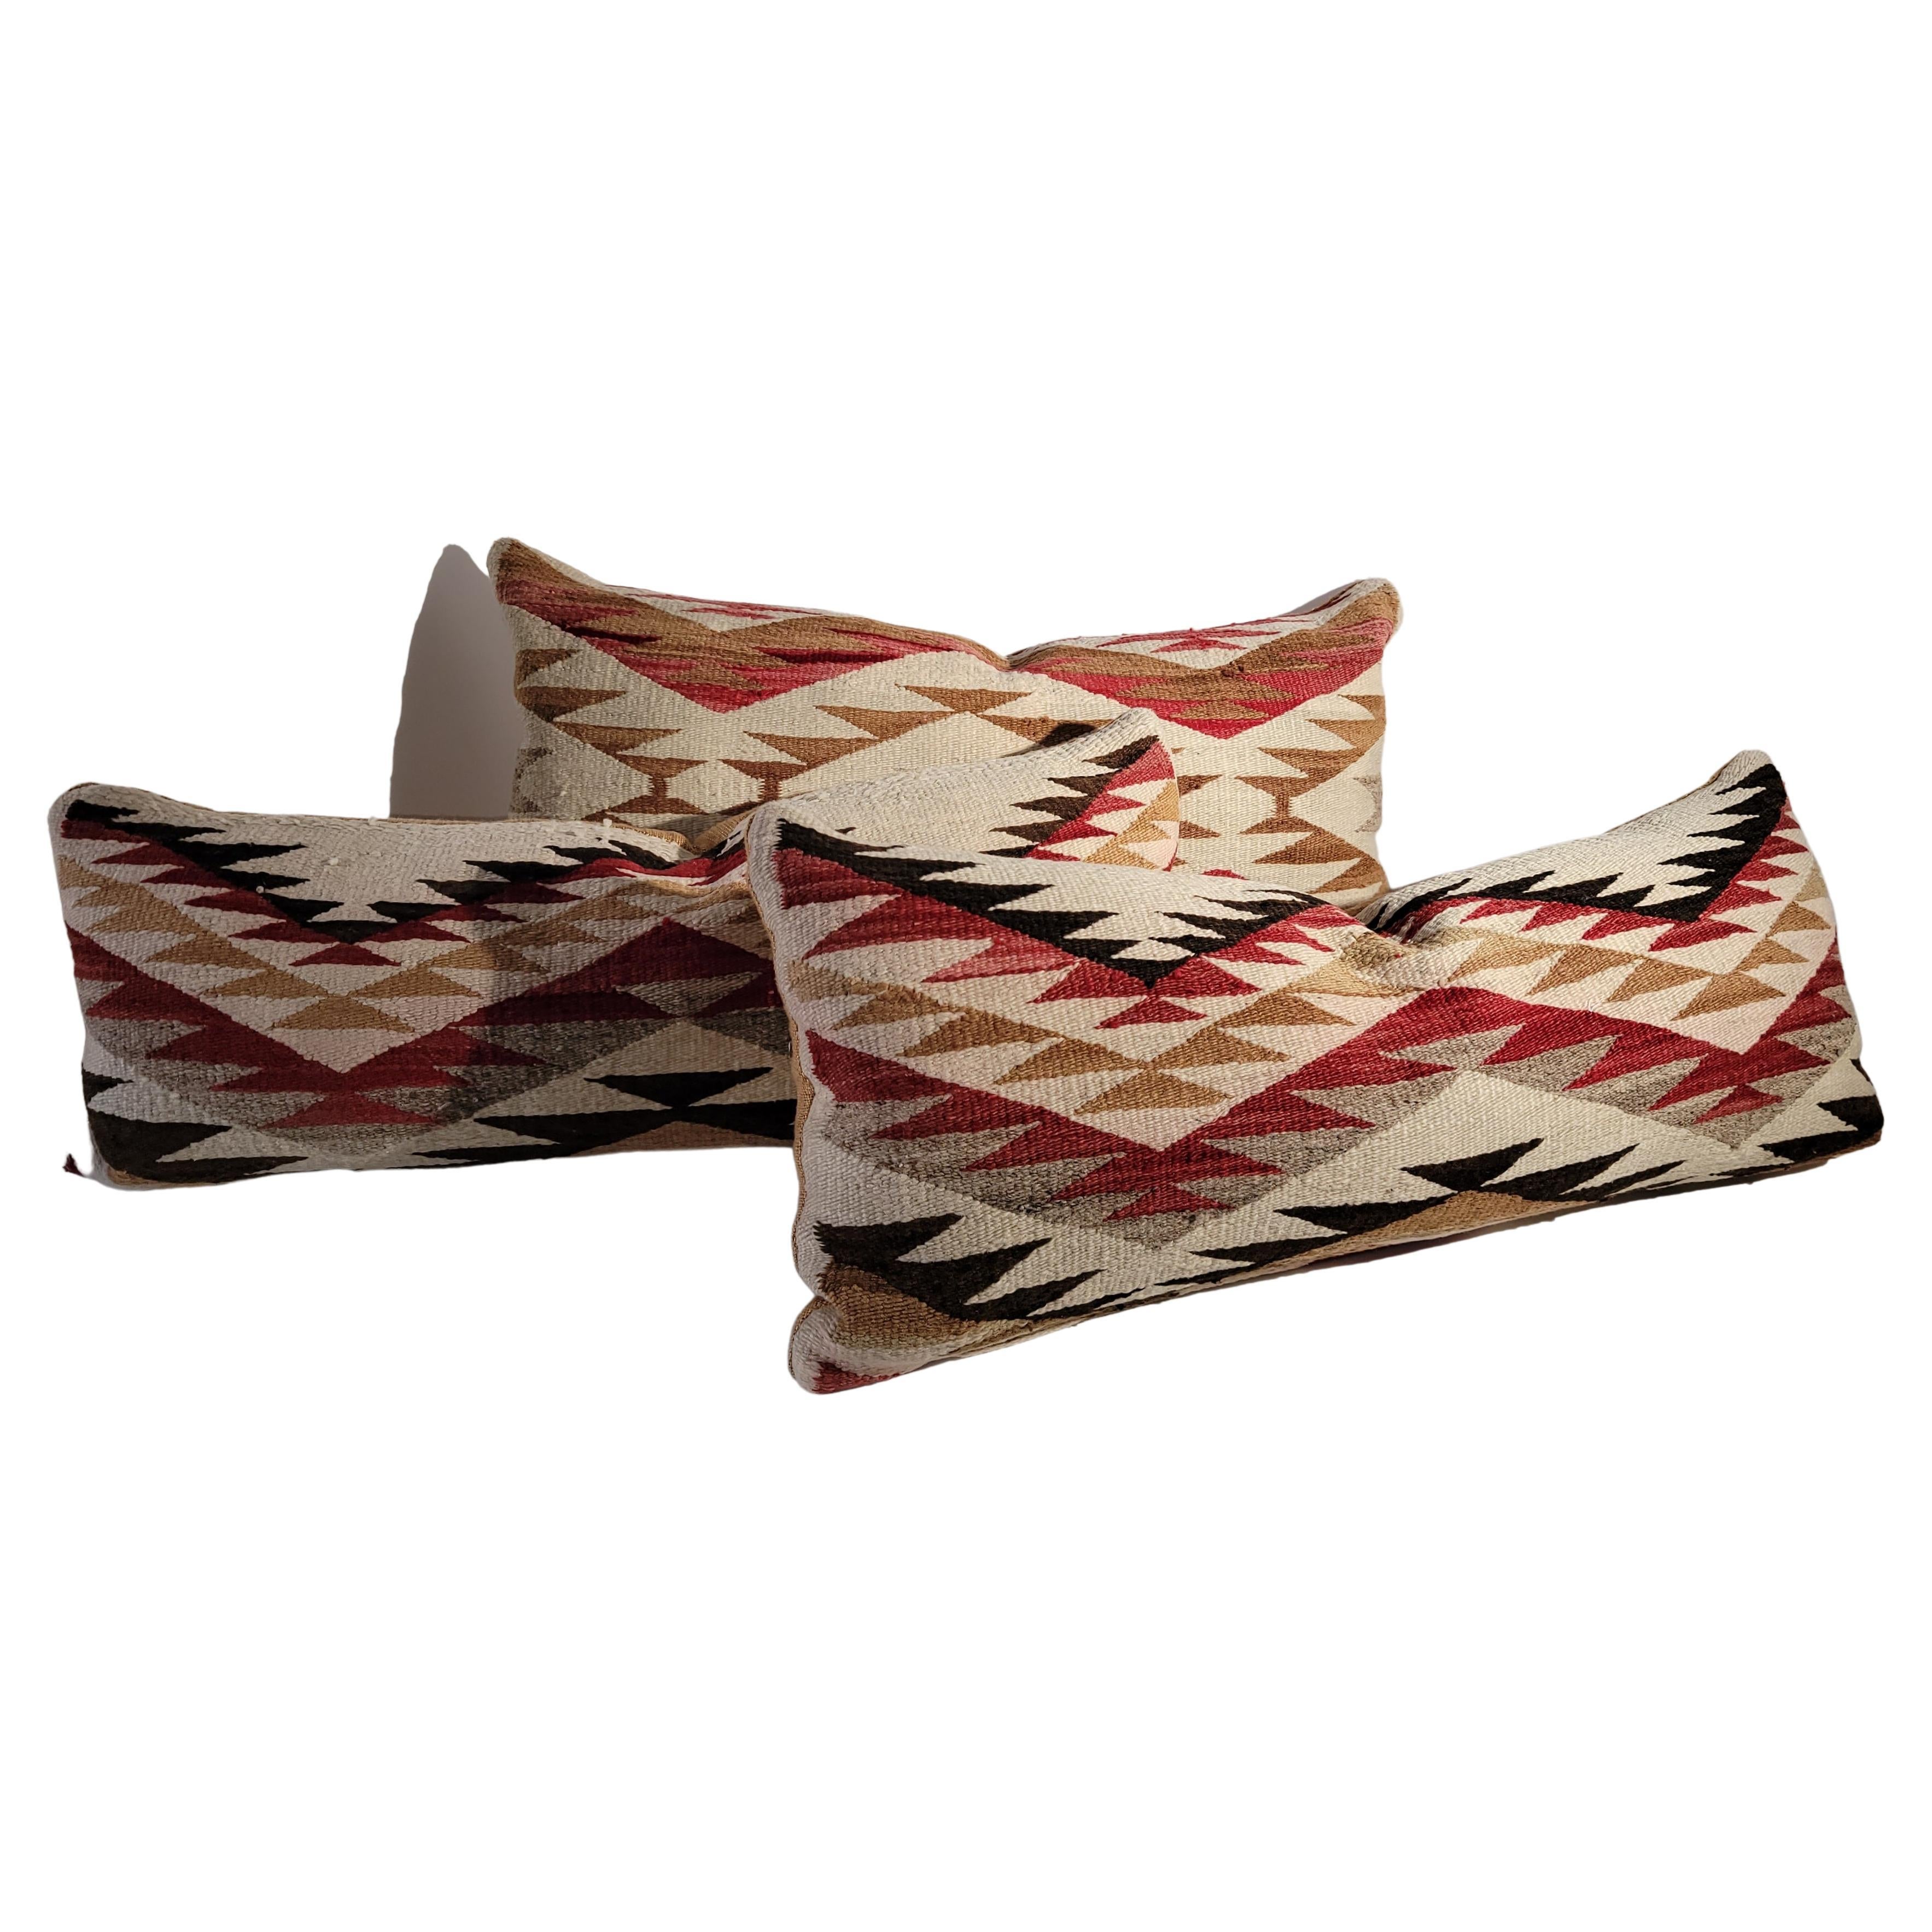  Navajo Indian Weaving Bolster Pillows